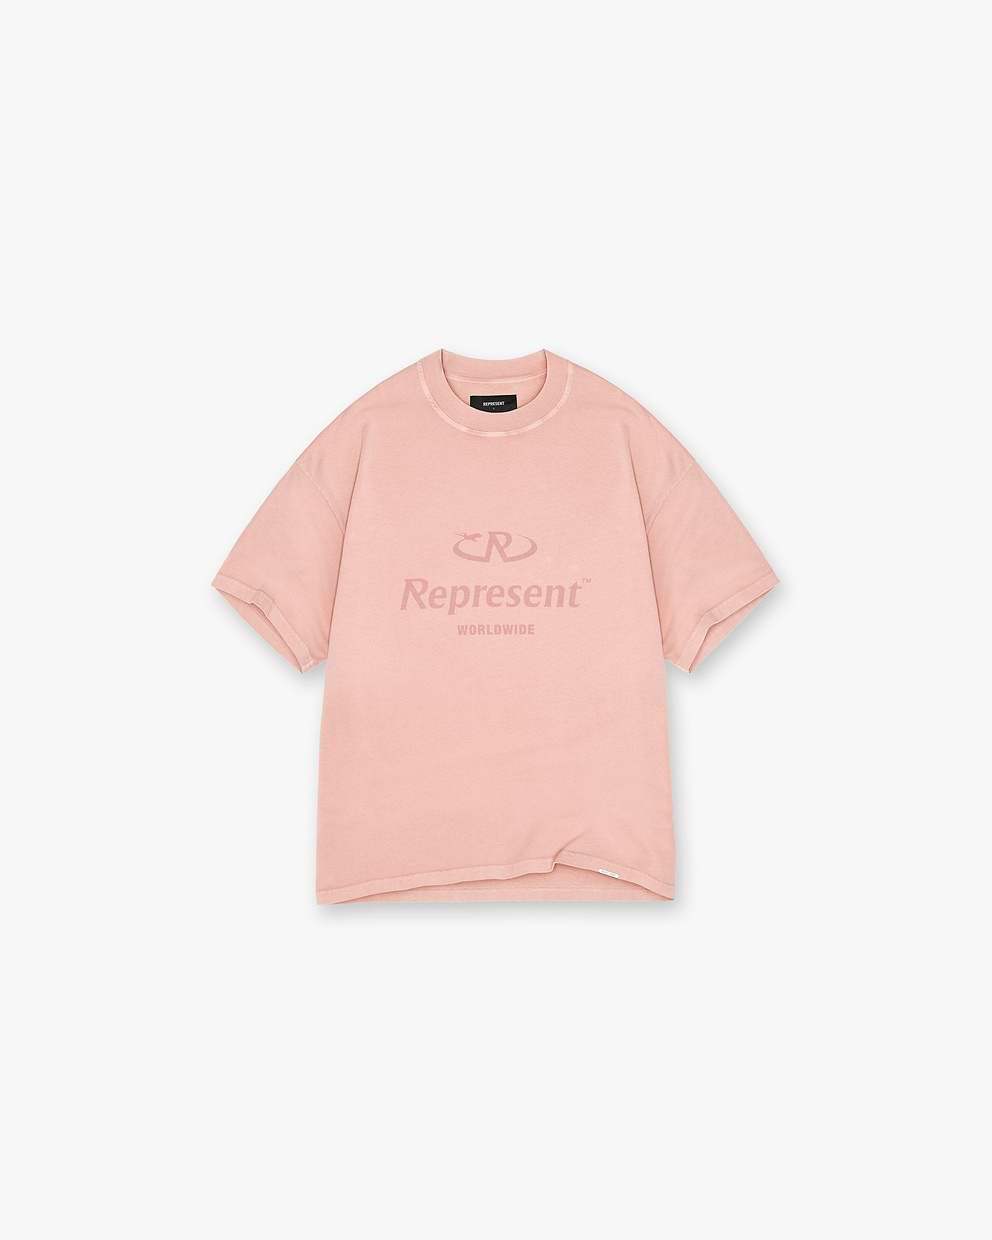 Worldwide T-Shirt | Pink | REPRESENT CLO